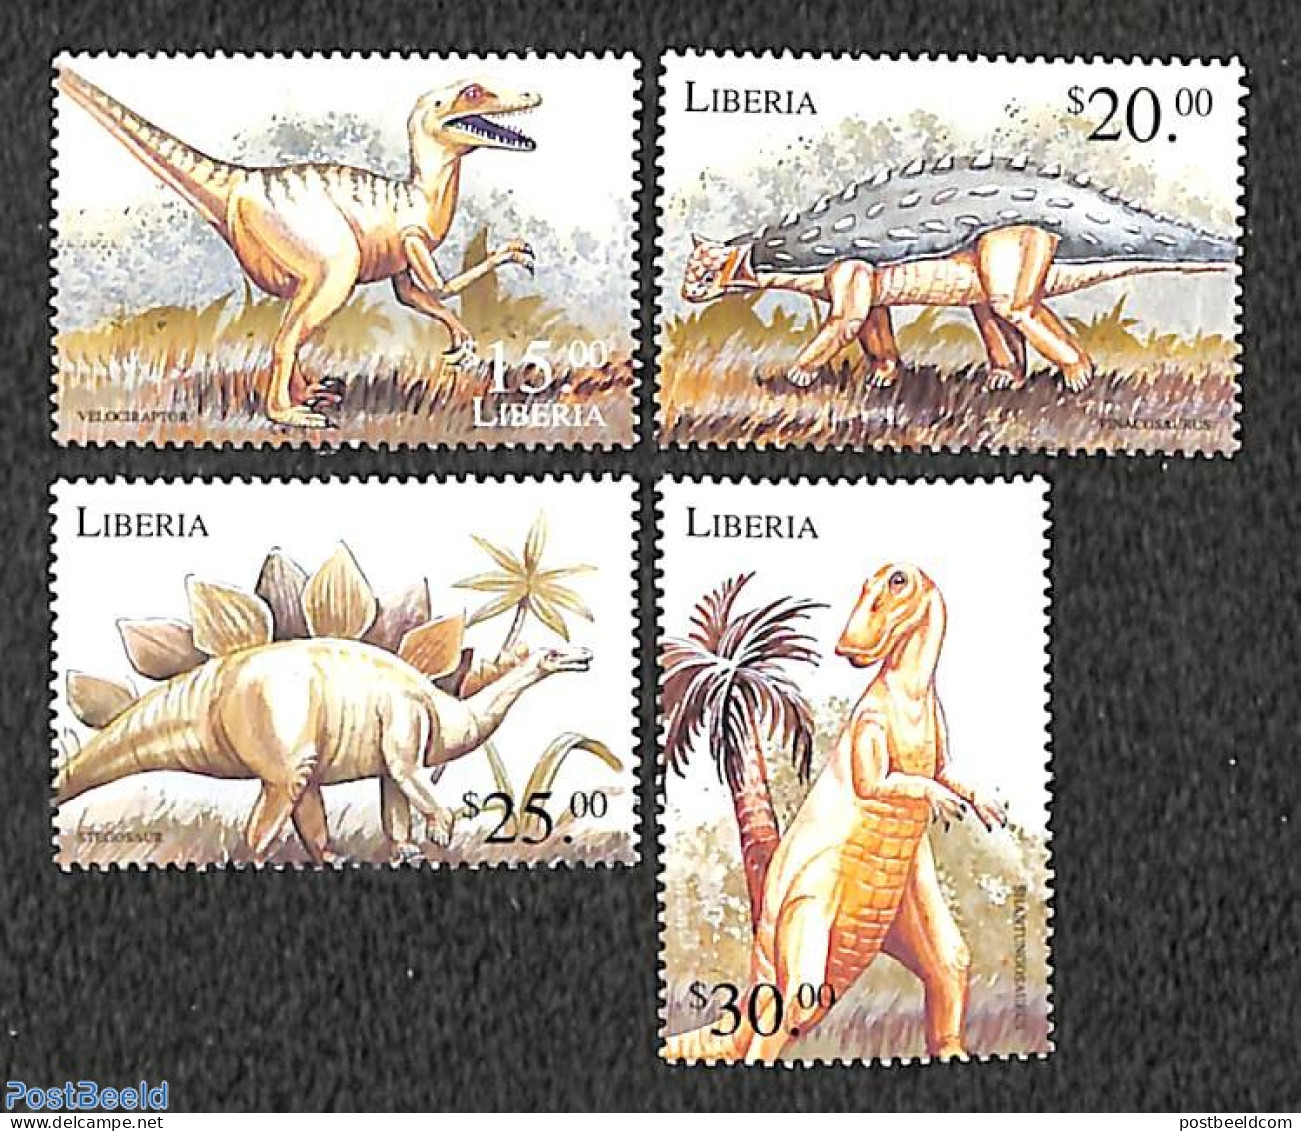 Liberia 1999 Preh. Animals 4v, Mint NH, Nature - Prehistoric Animals - Préhistoriques